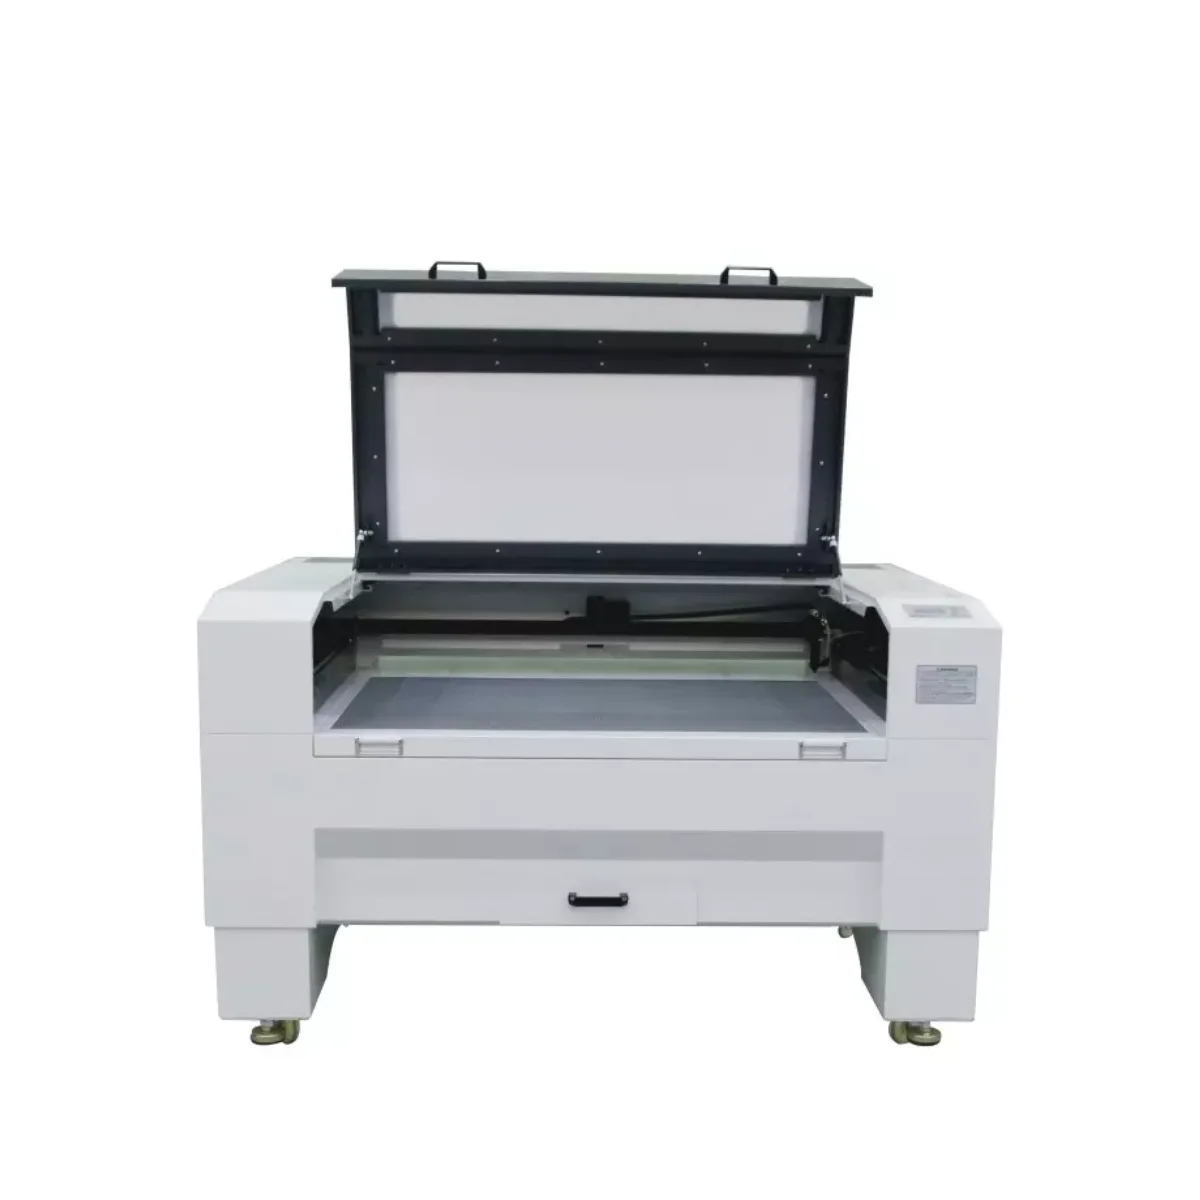 

80w 100w 130w 150w Lazer Cutter 9060 1390 1610 Fabric Acrylic Plywood Mdf Wood Cnc Co2 Laser Cutting Engraving Machine